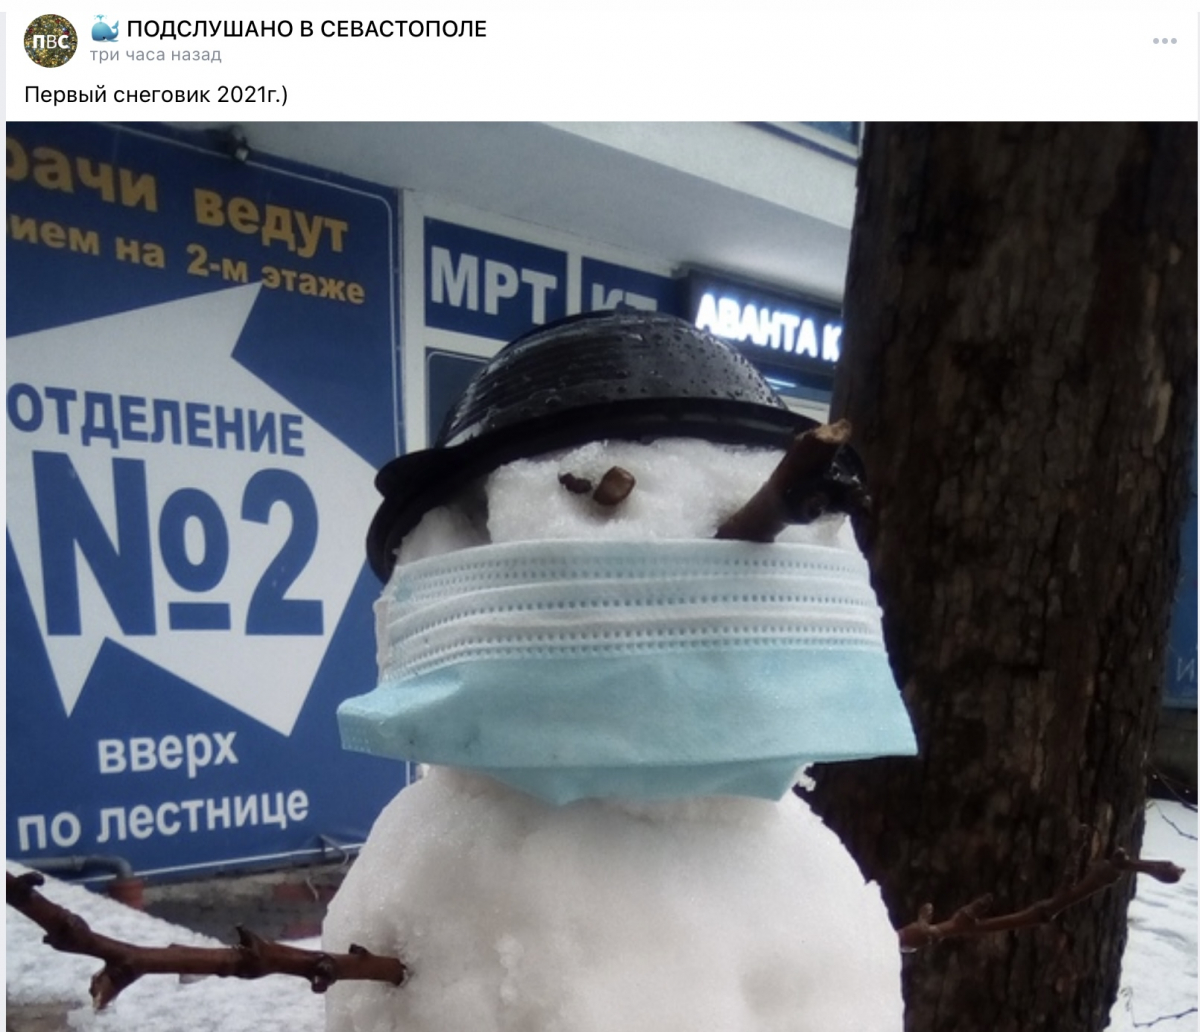 снег севастополь погода зима ненастье дороги севсети город горожане посты сообщения